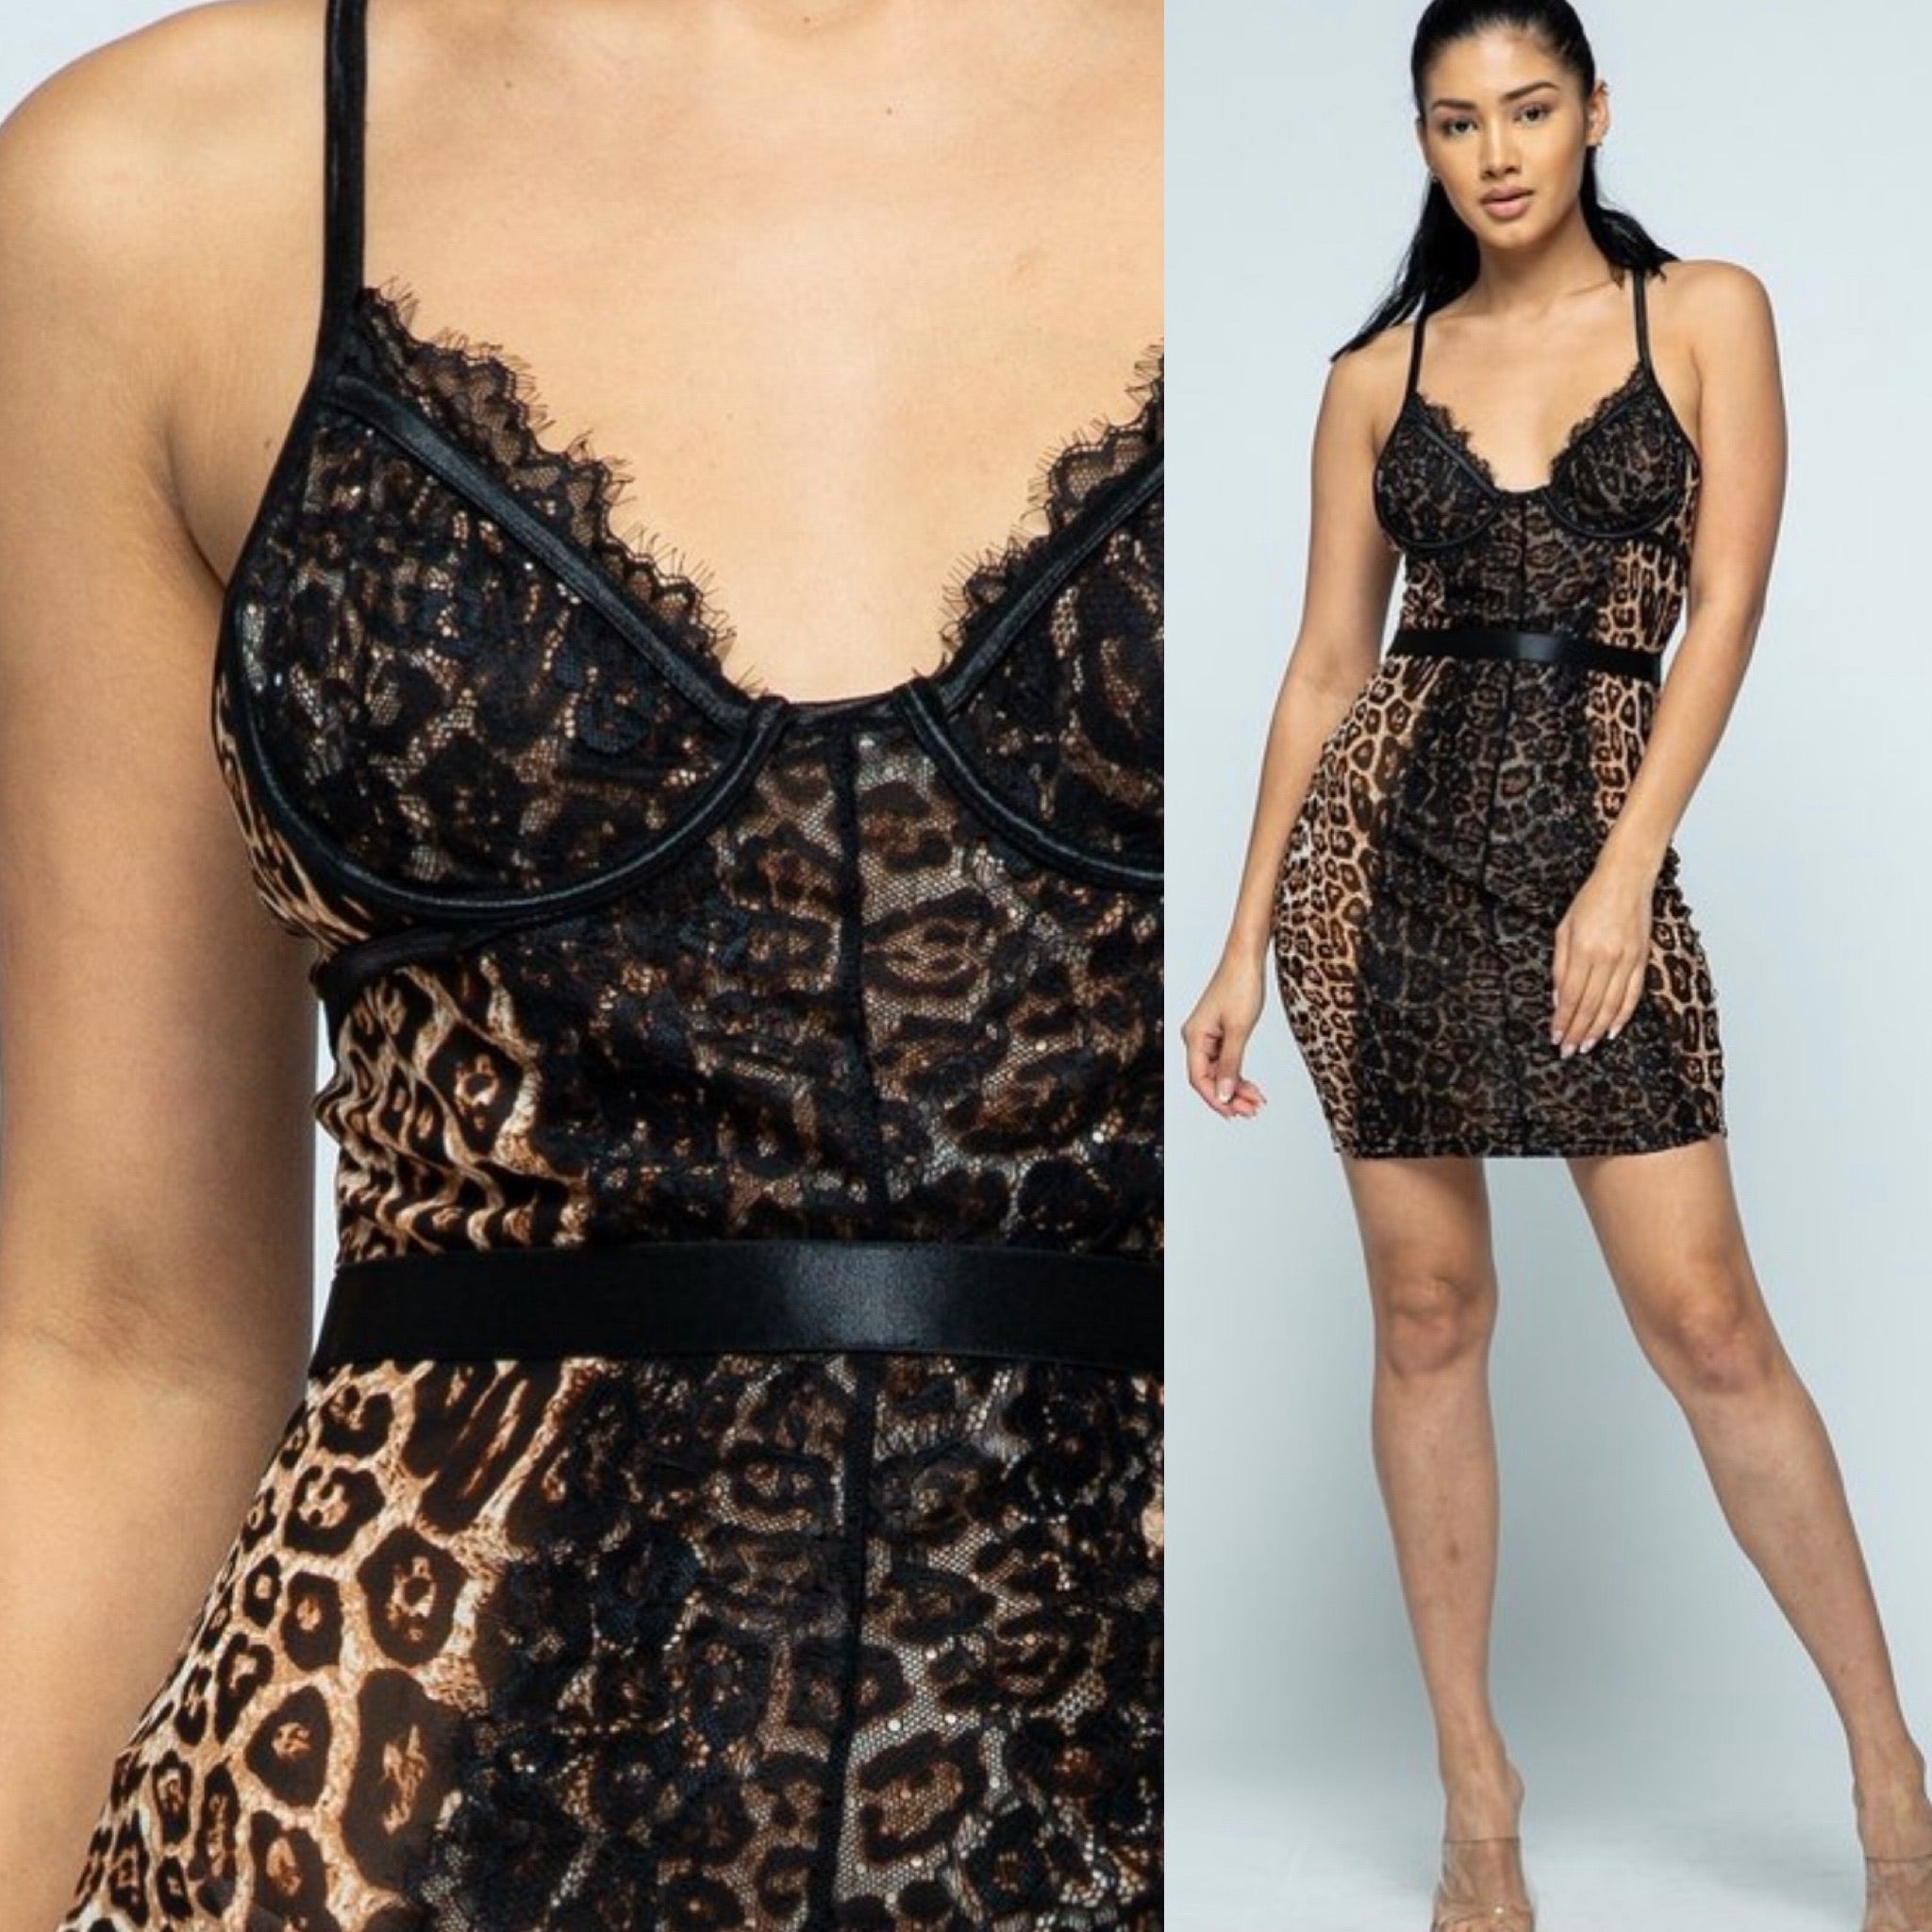 The “Black Lace” Mesh Leopard Dress